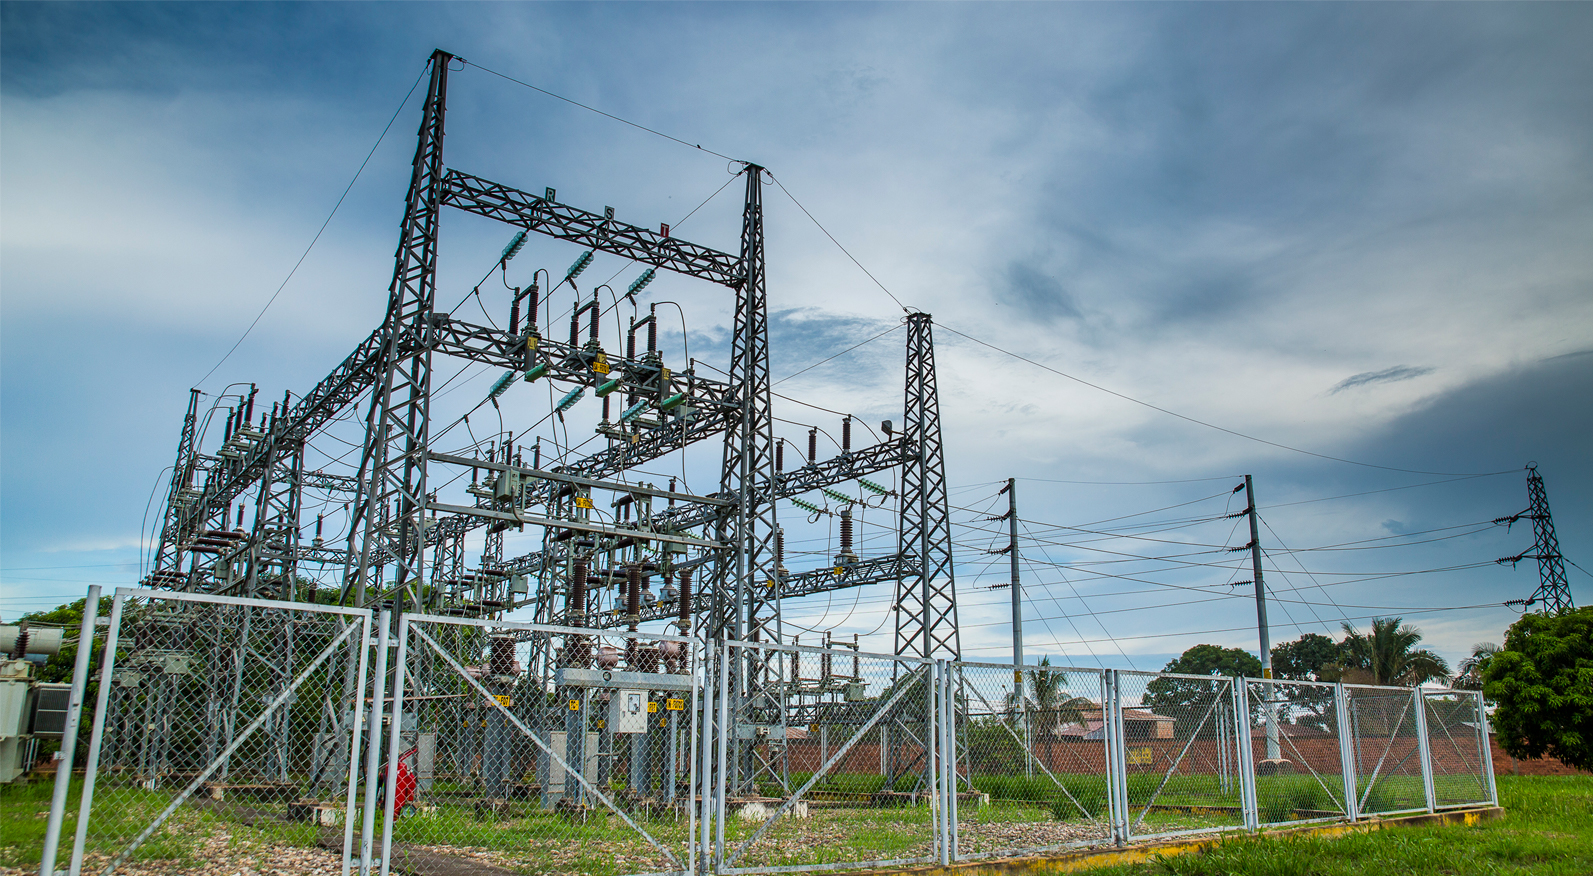 Inversiones en APP de transmisión eléctrica superan los US$ 3,600 millones y contribuyen a sostener la actividad económica